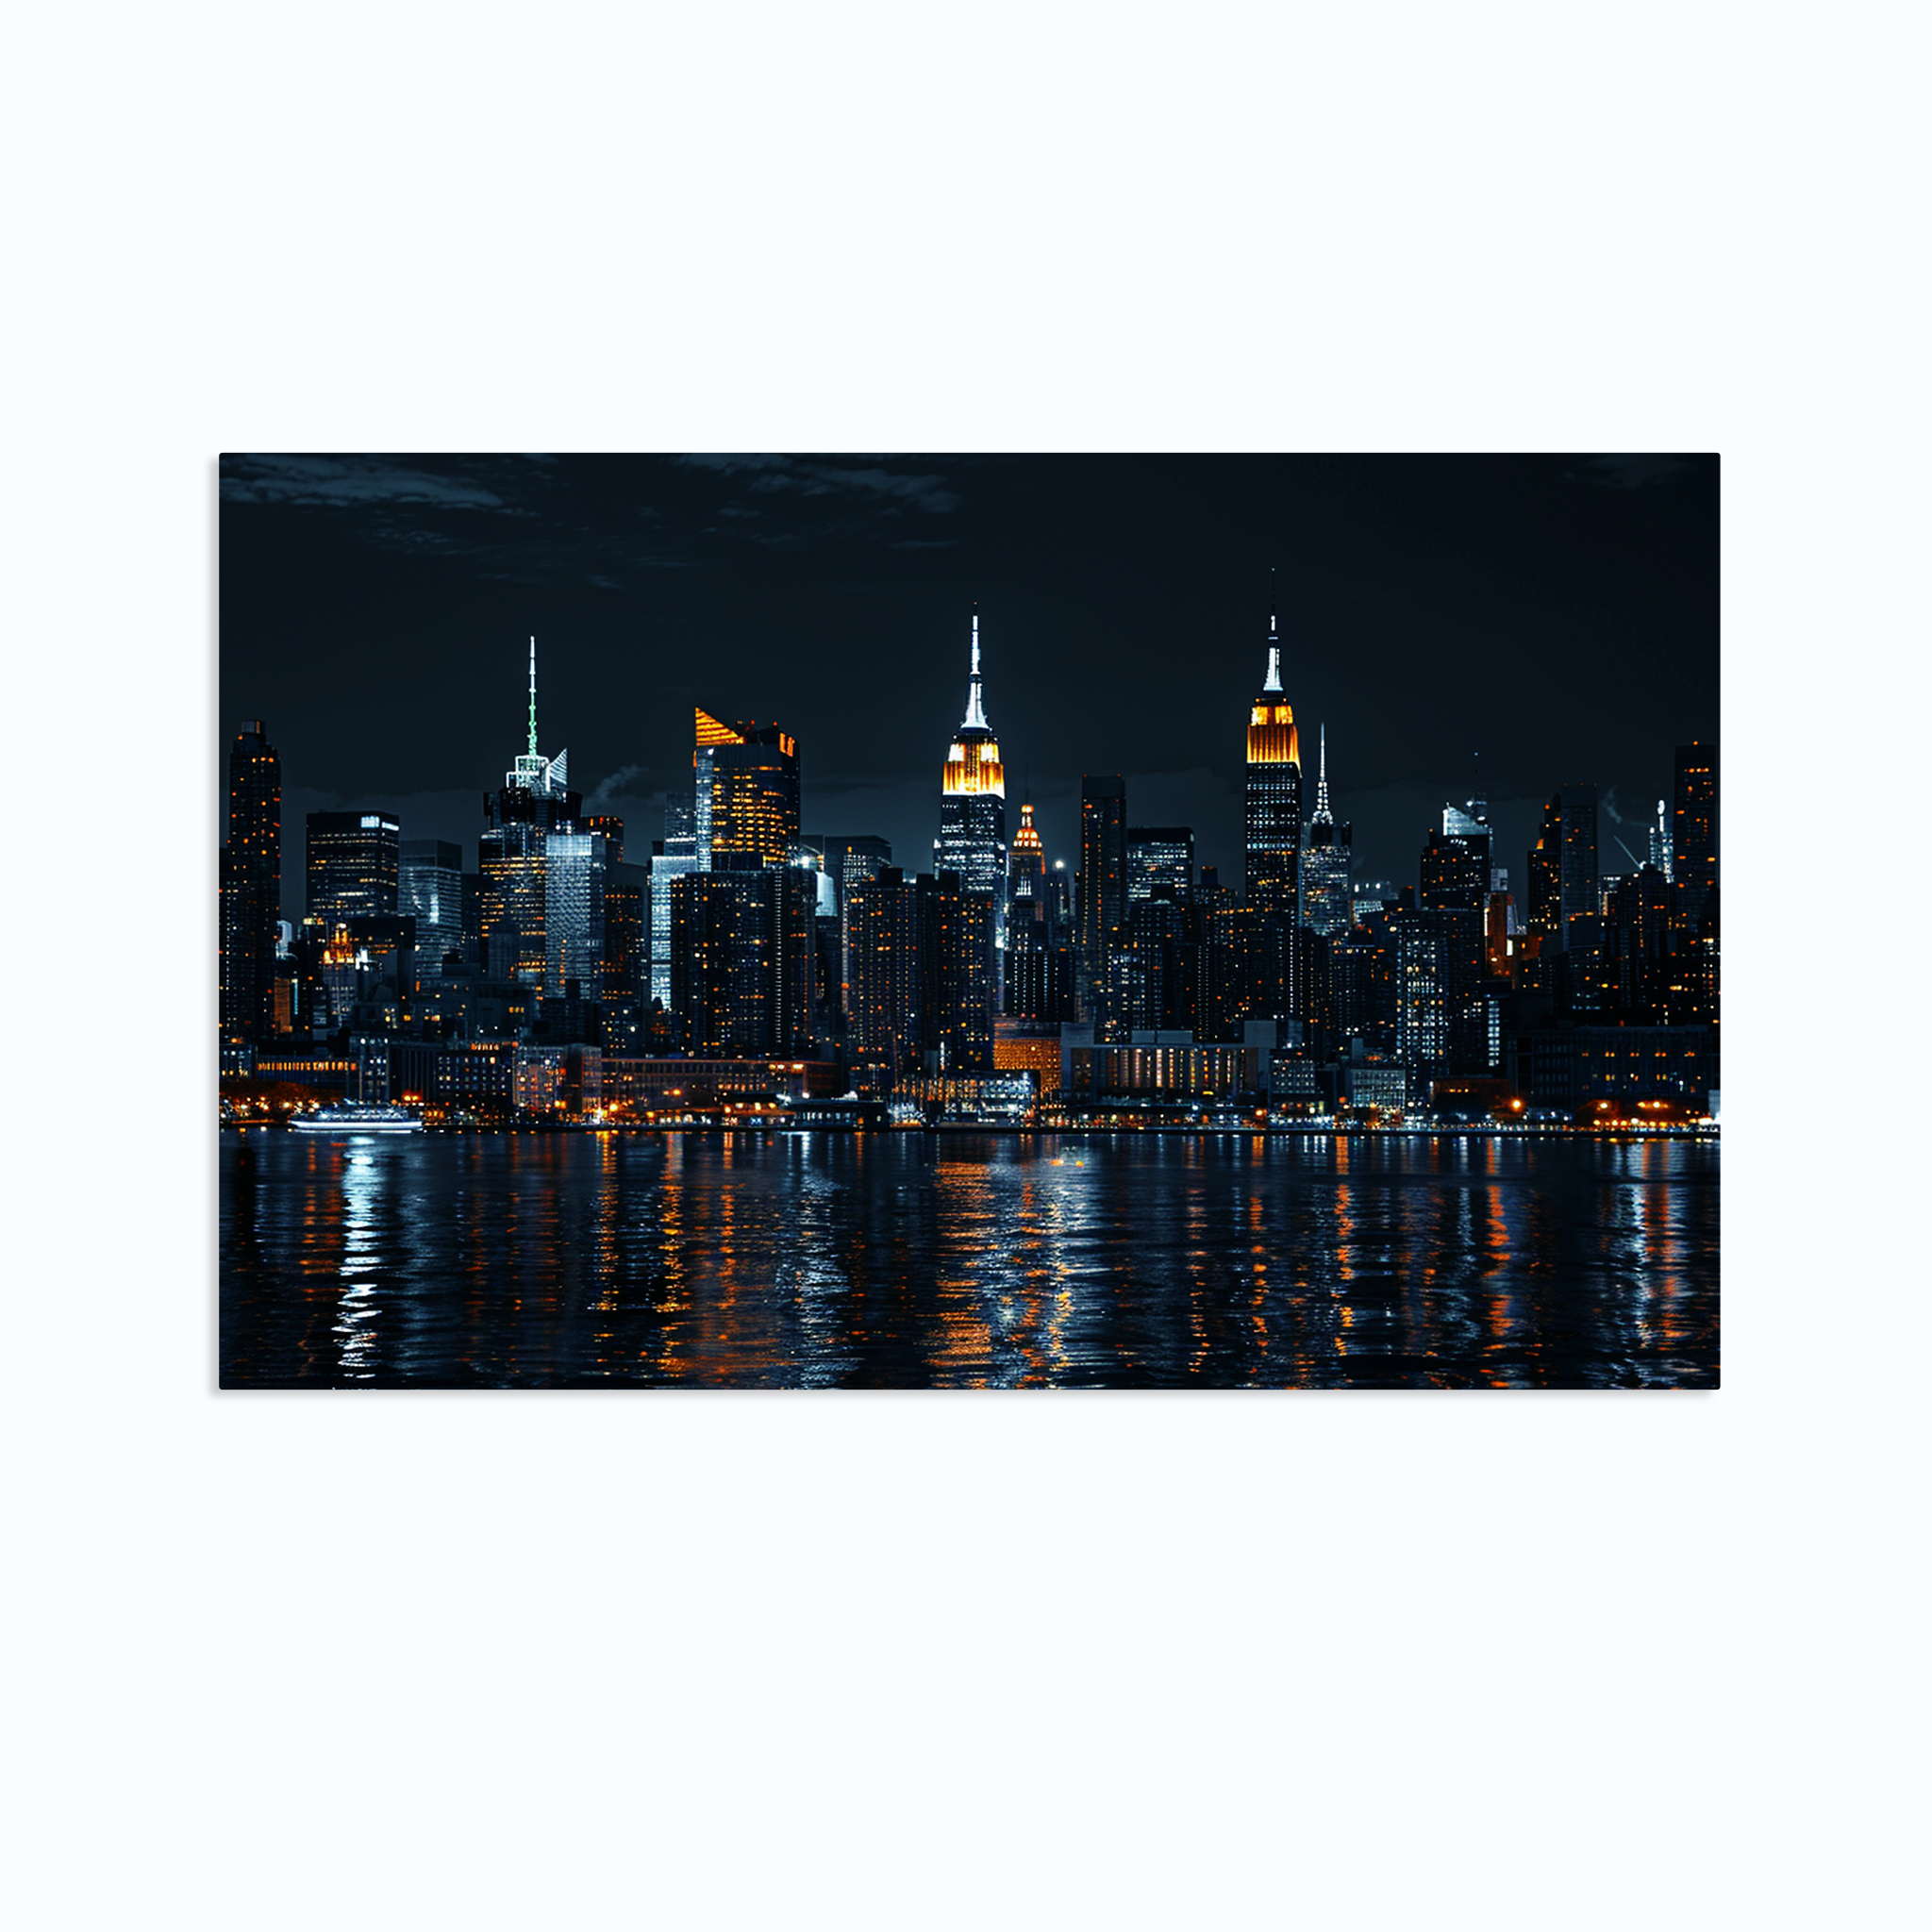 NY City